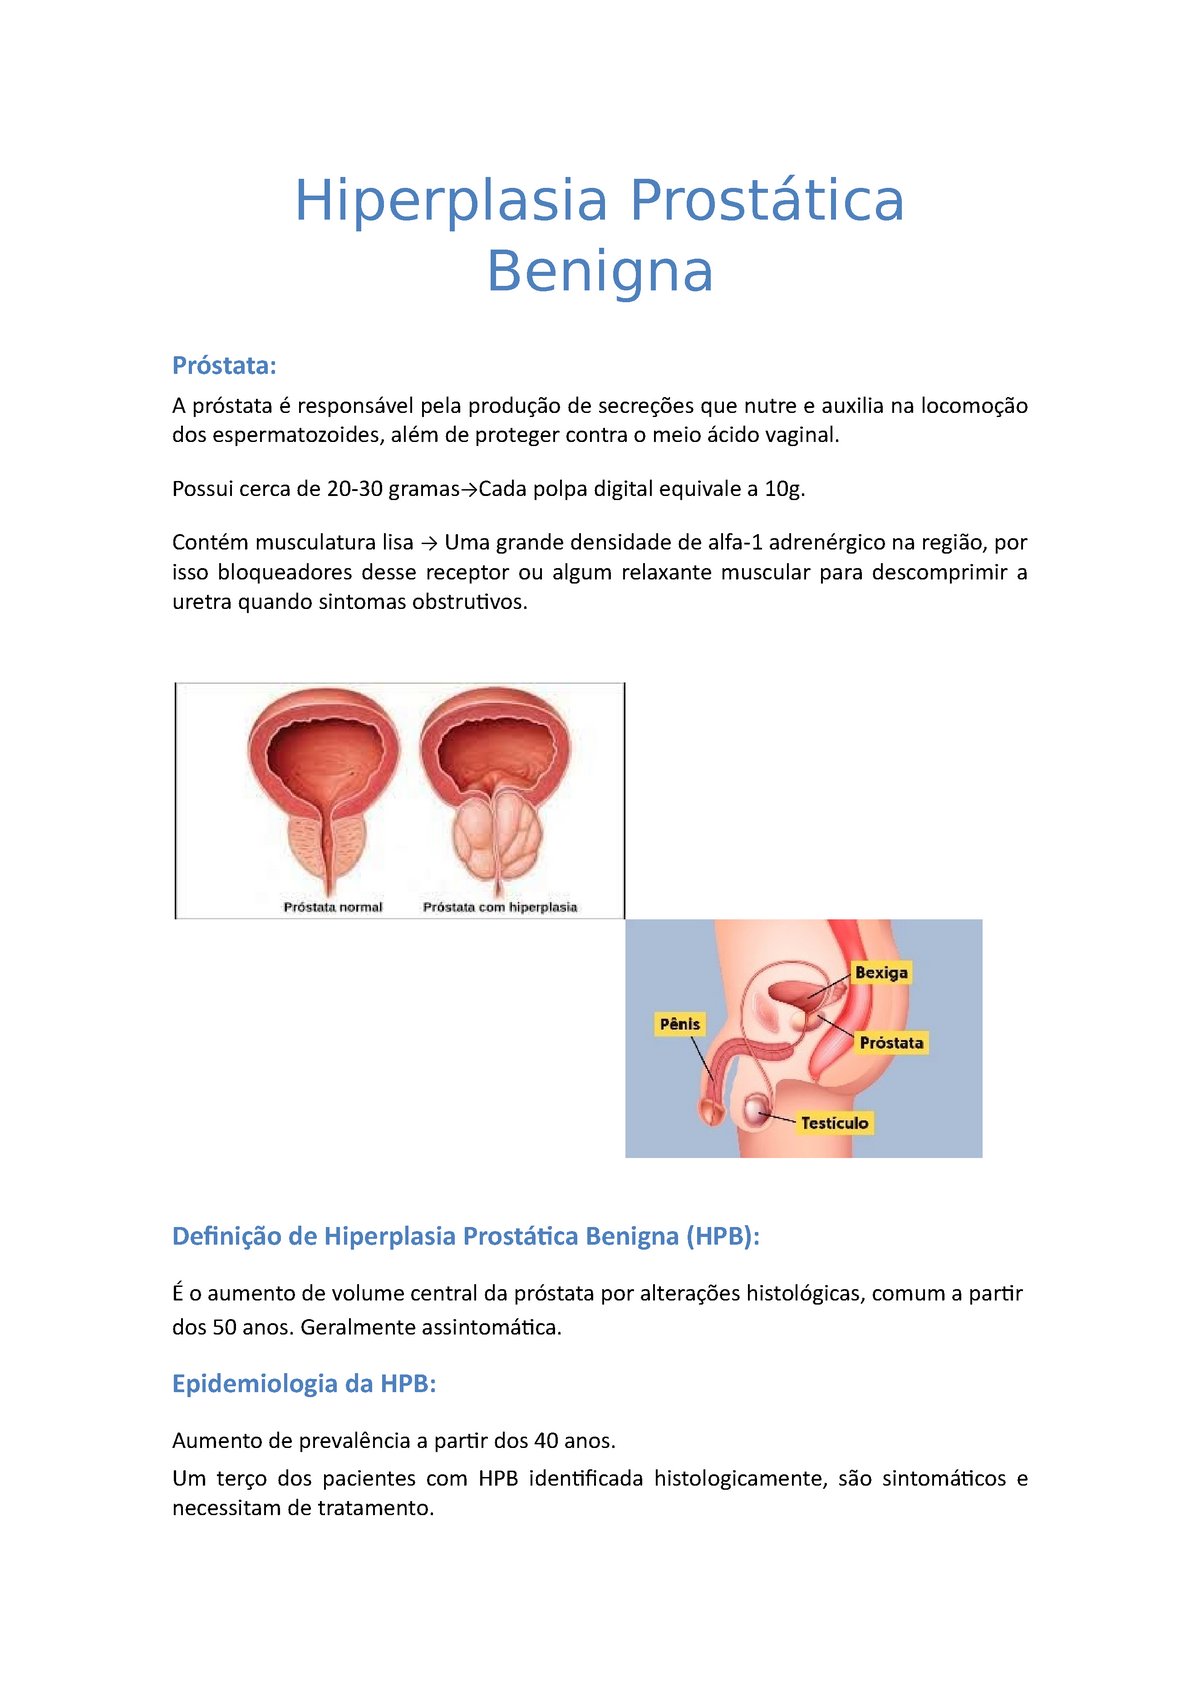 hipertrofia prostatica benigna tratamento)